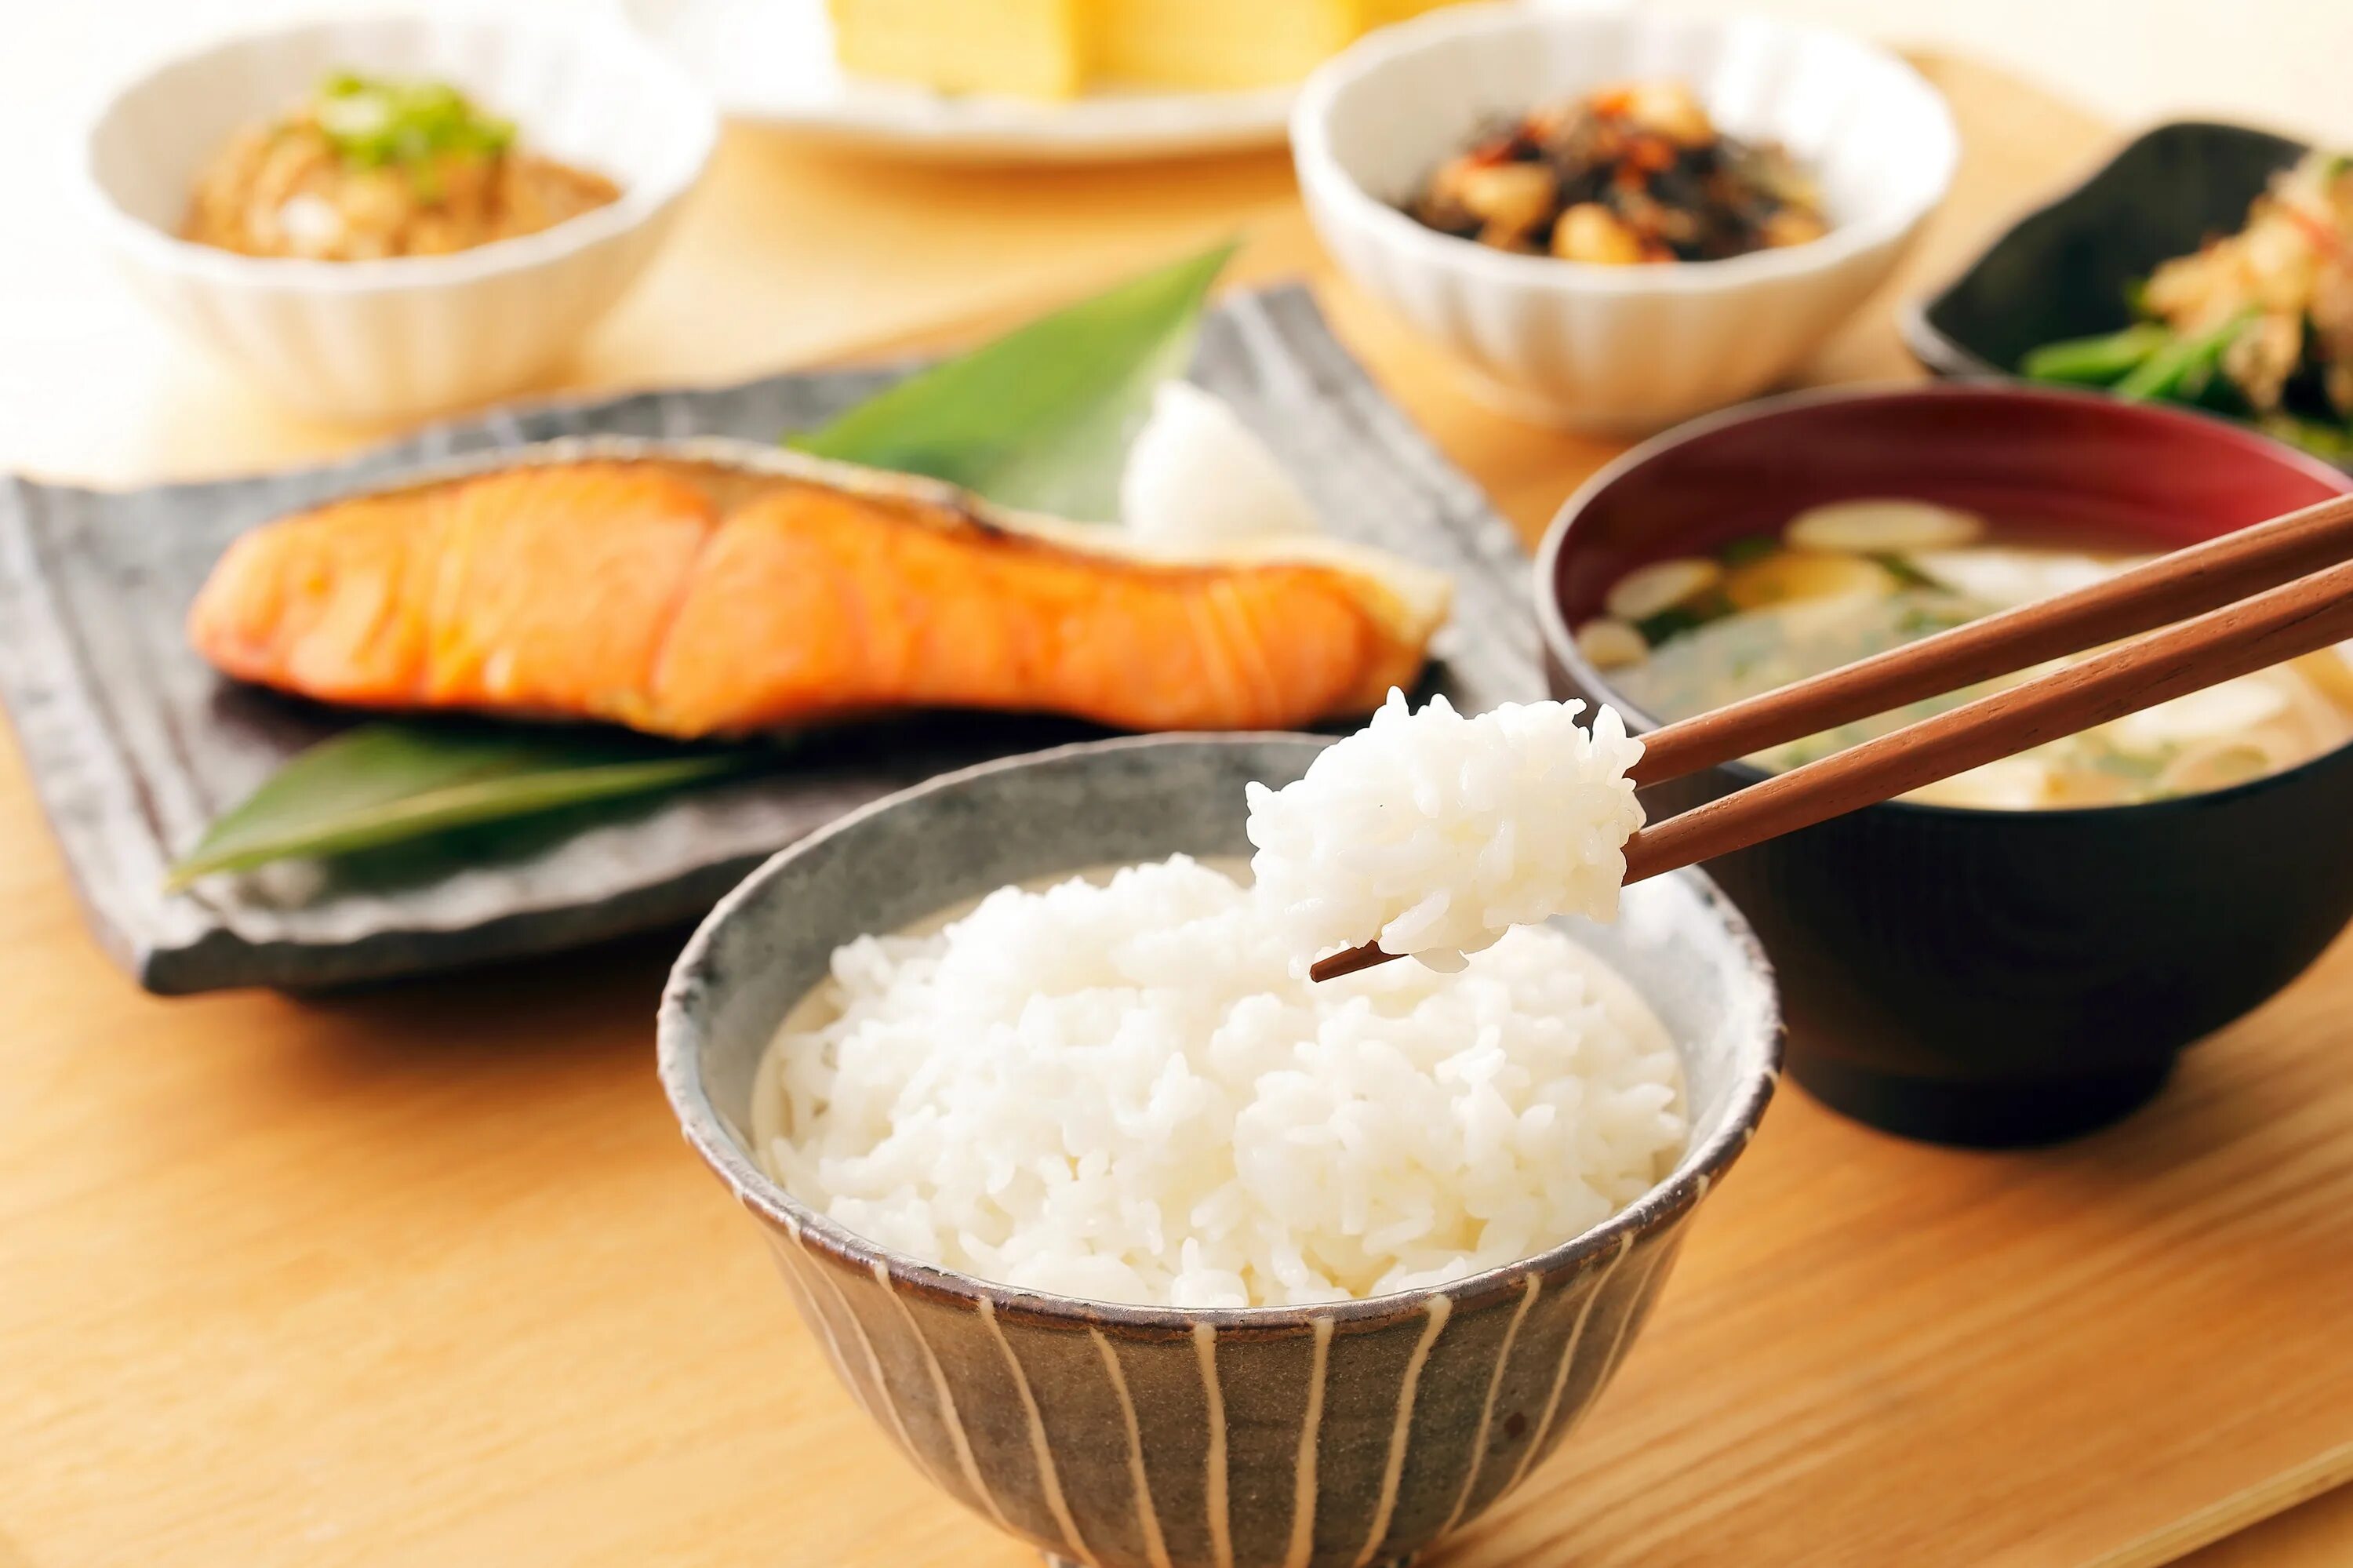 Японский рис. Японская еда с рисом. Японские диетические блюда. Национальная кухня Японии. Как едят рис палочками